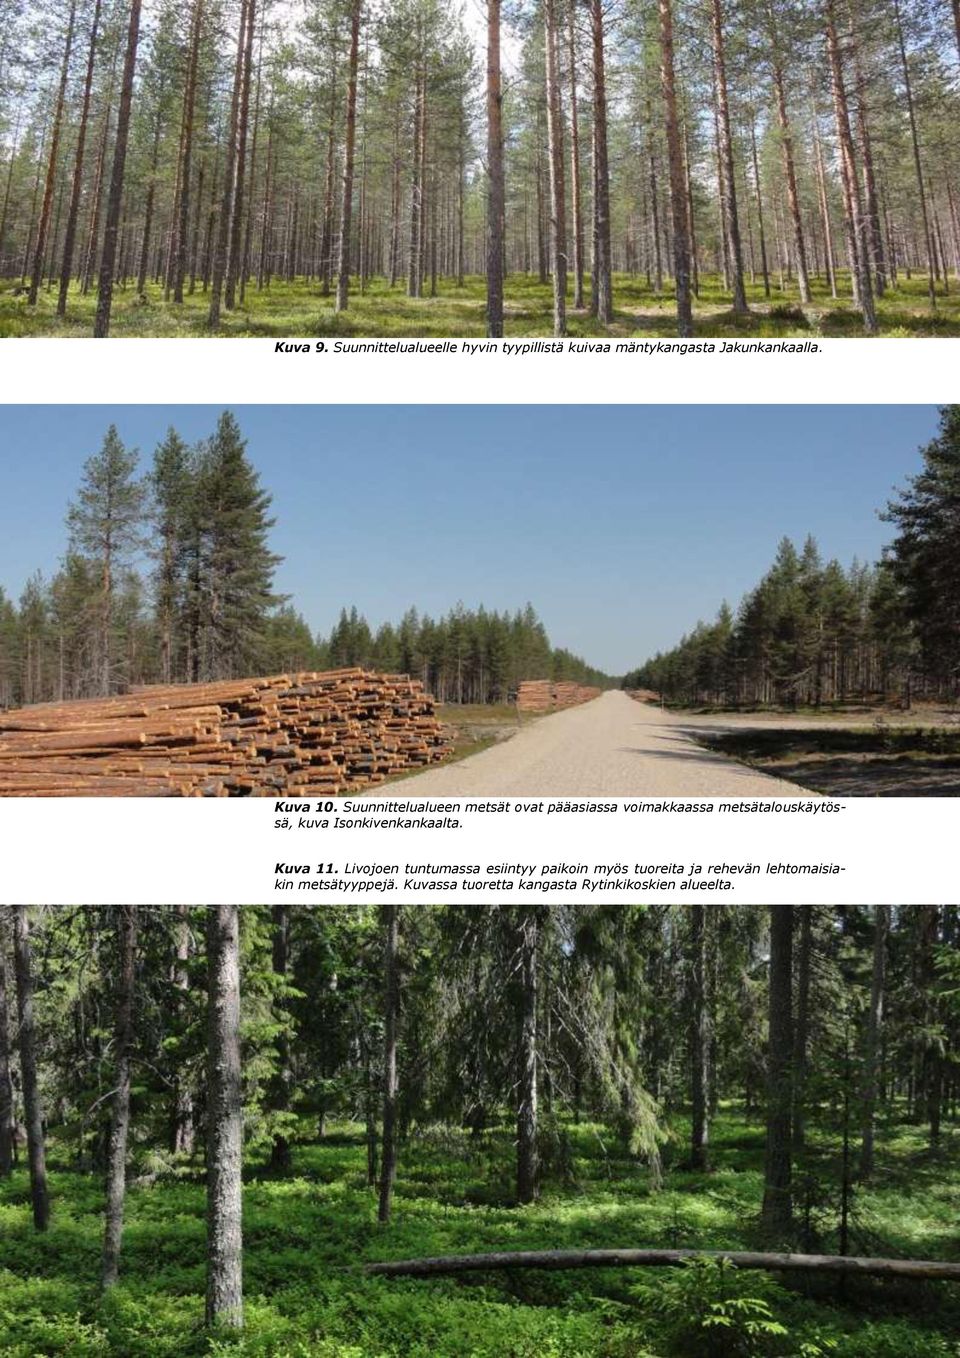 Suunnittelualueen metsät ovat pääasiassa voimakkaassa metsätalouskäytössä, kuva Isonkivenkankaalta.